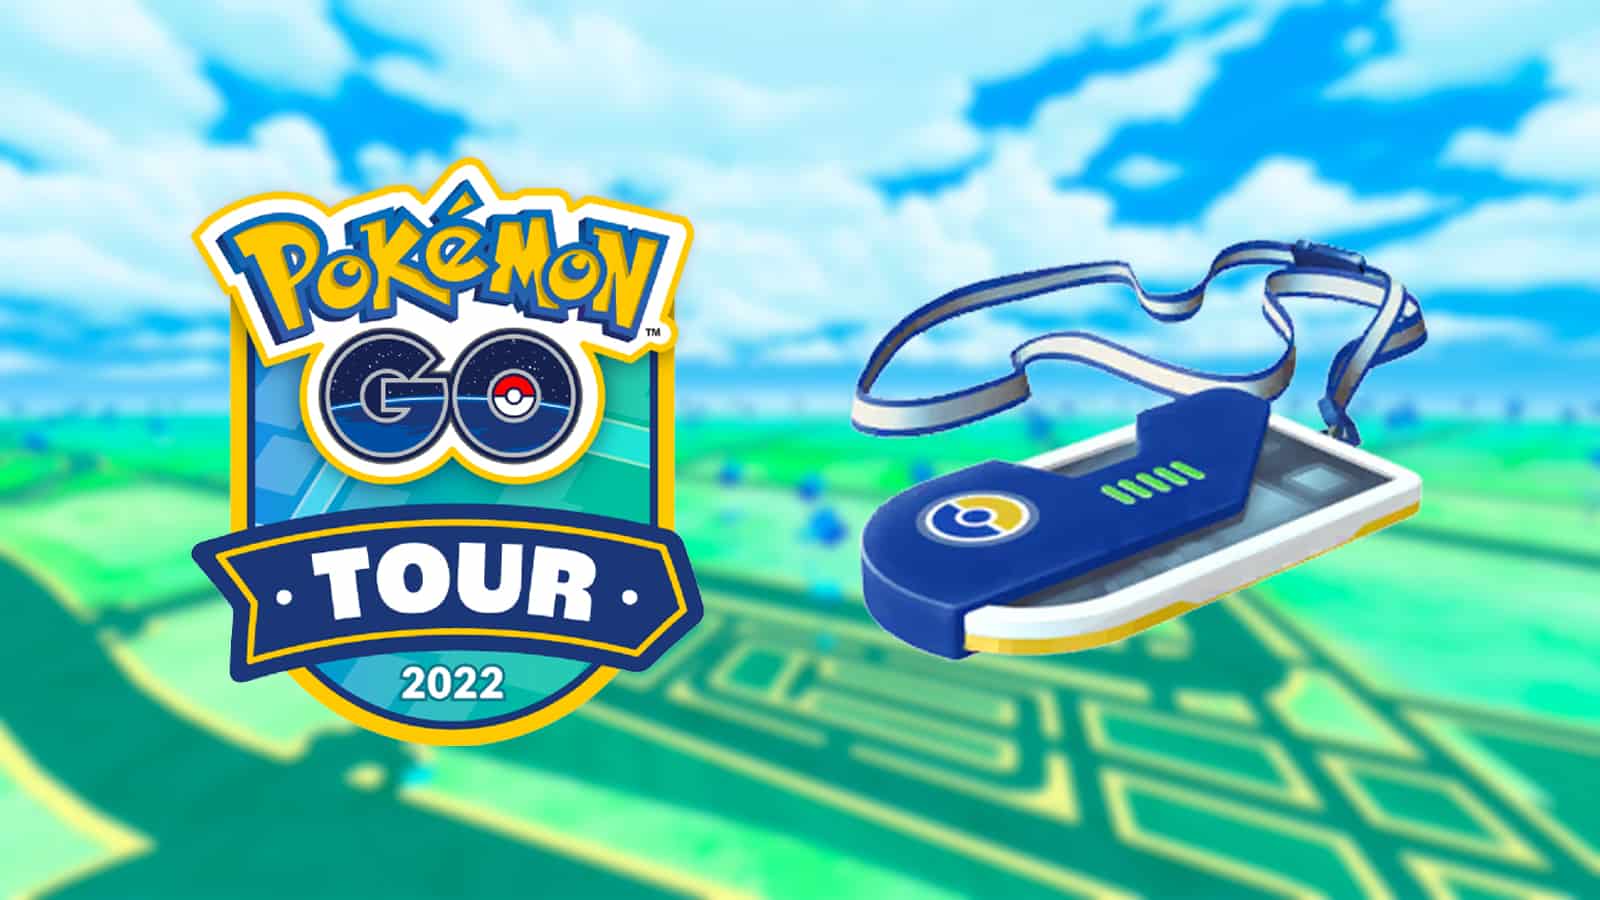 Pokémon Go Tour Johto - Gold or Silver version differences